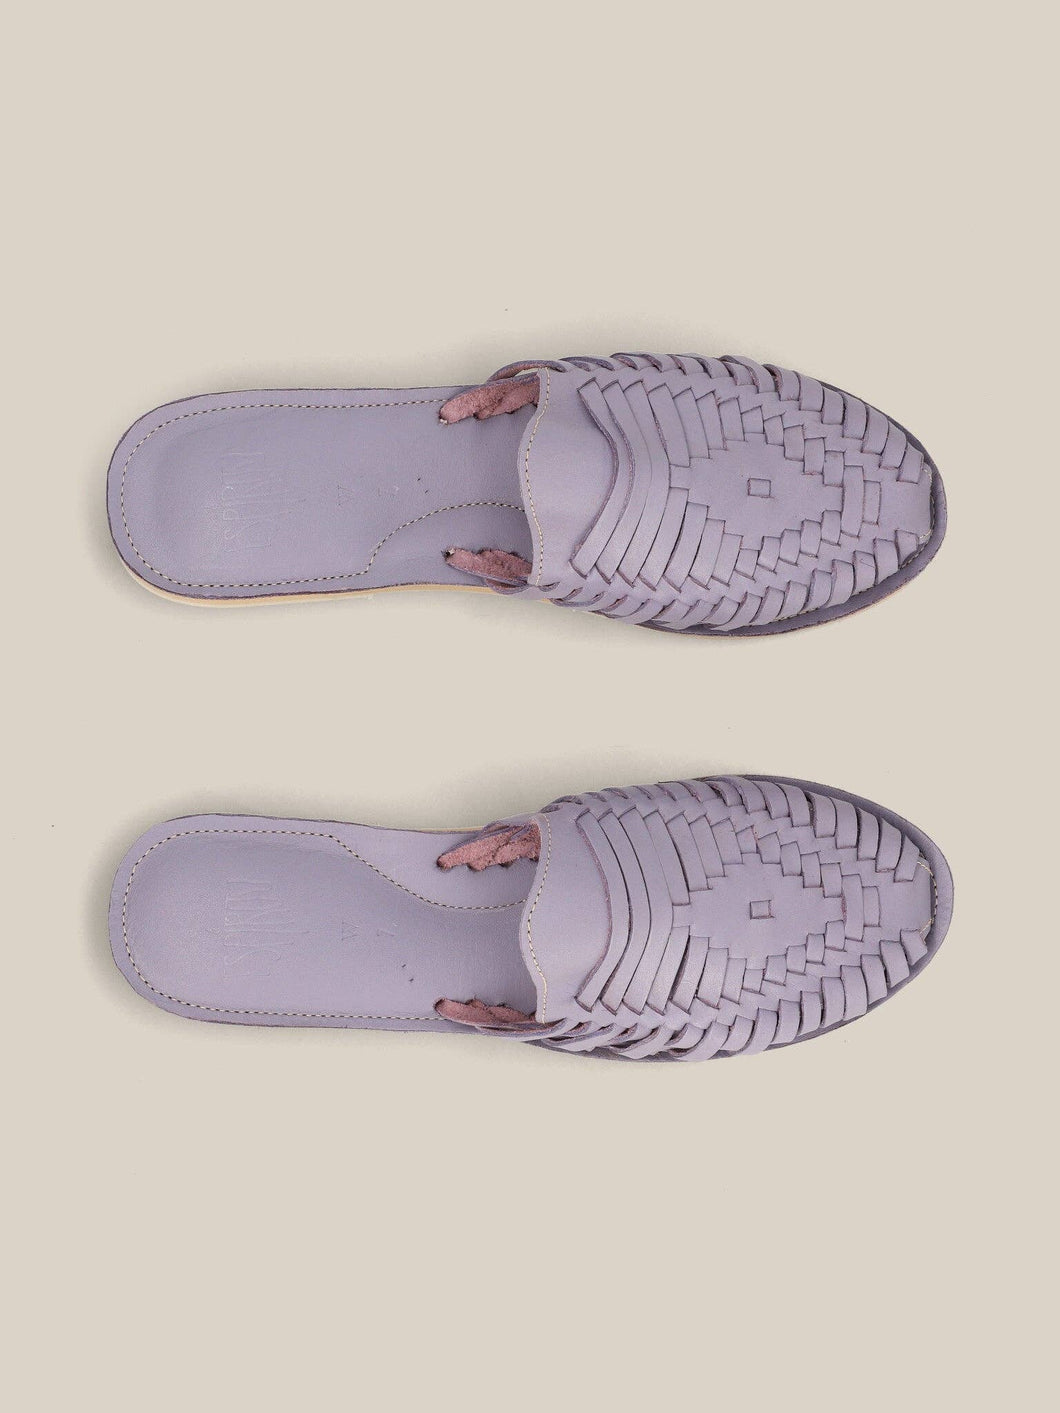 Lavender Slip On Huarache Sandal